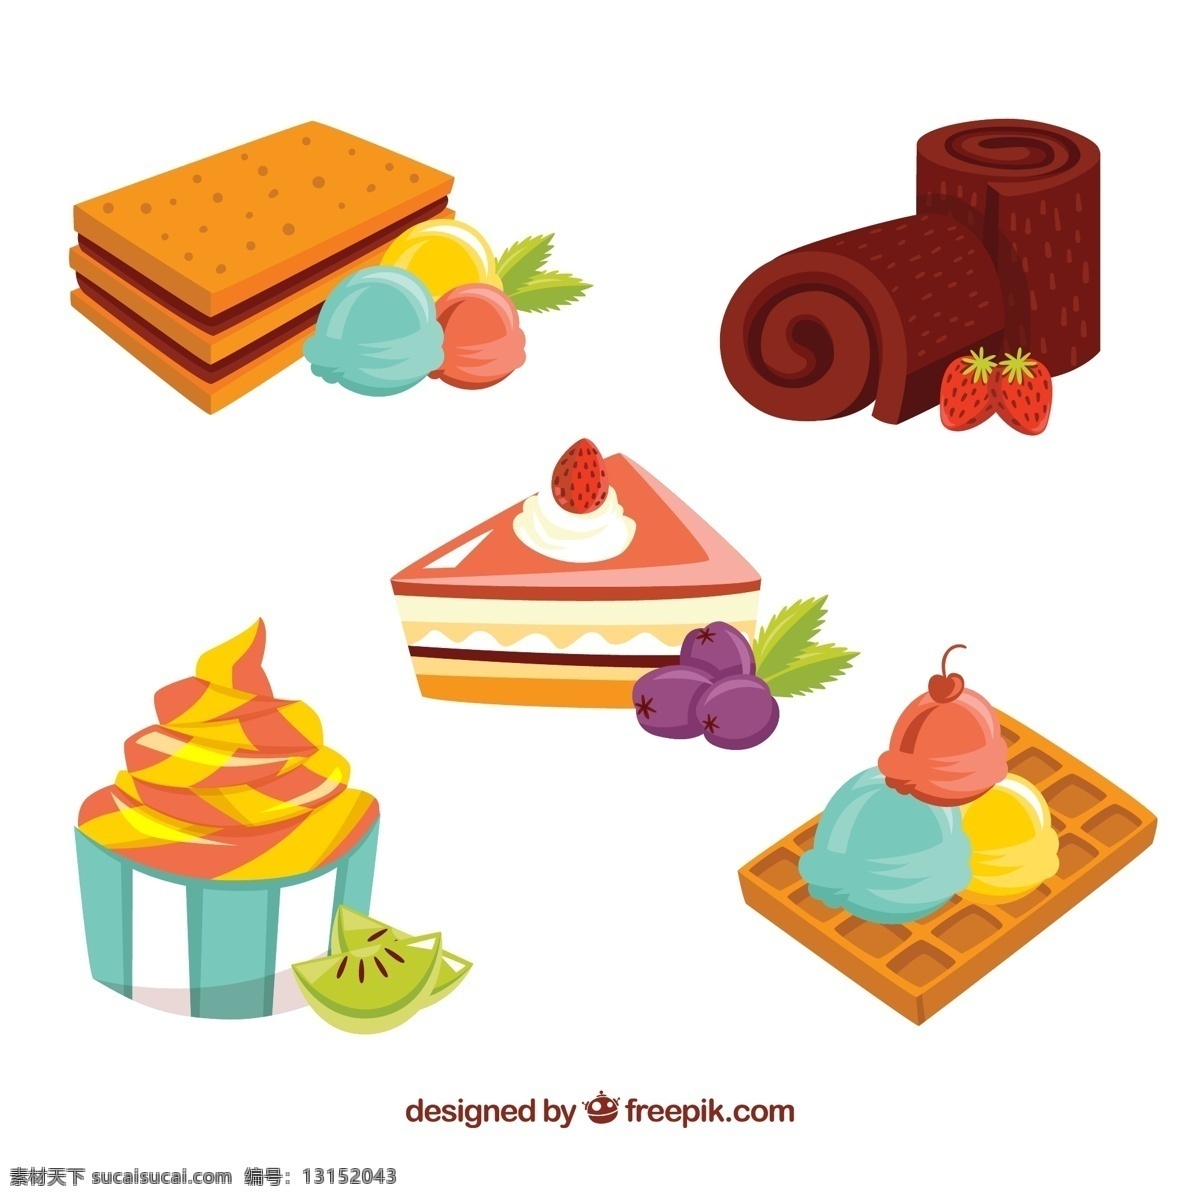 款 卡通 甜品 矢量 饼干 冰淇淋 面包 蛋卷 纸杯蛋糕 三角蛋糕 蓝莓 水果 草莓 猕猴桃 标志图标 其他图标